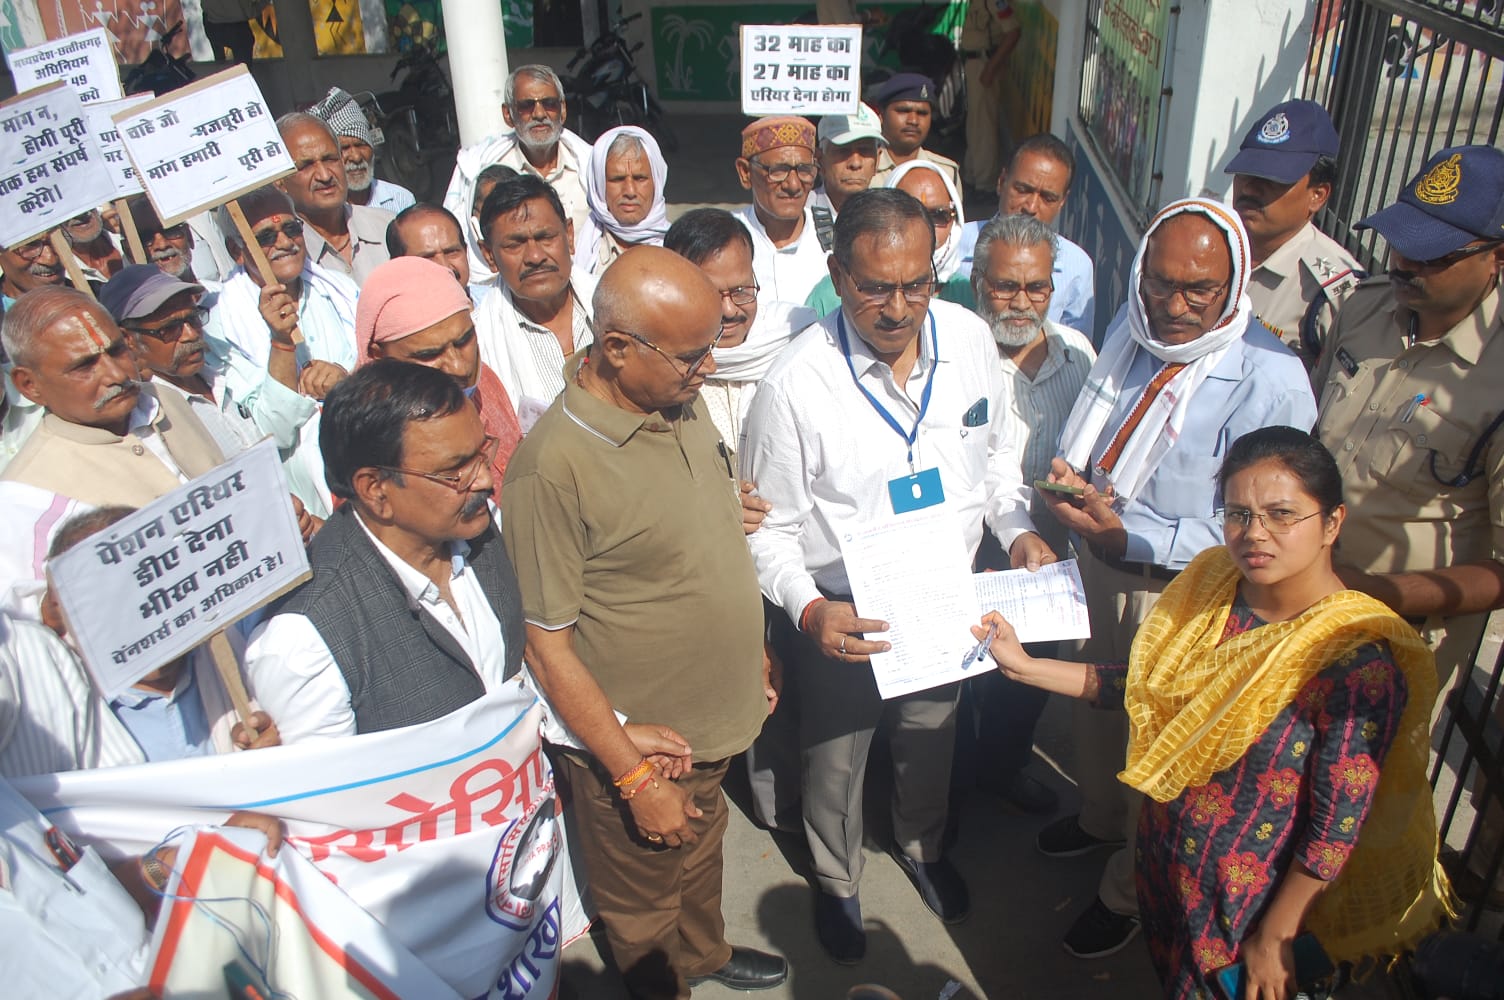 दिनांक 28 मार्च सोमवार को सतना जिले में पेंशनर एसोसिएशन ने  नौ सूत्रीय मांगो के समर्थन में एक दिवसीय धरना प्रदर्शन किया गया ।